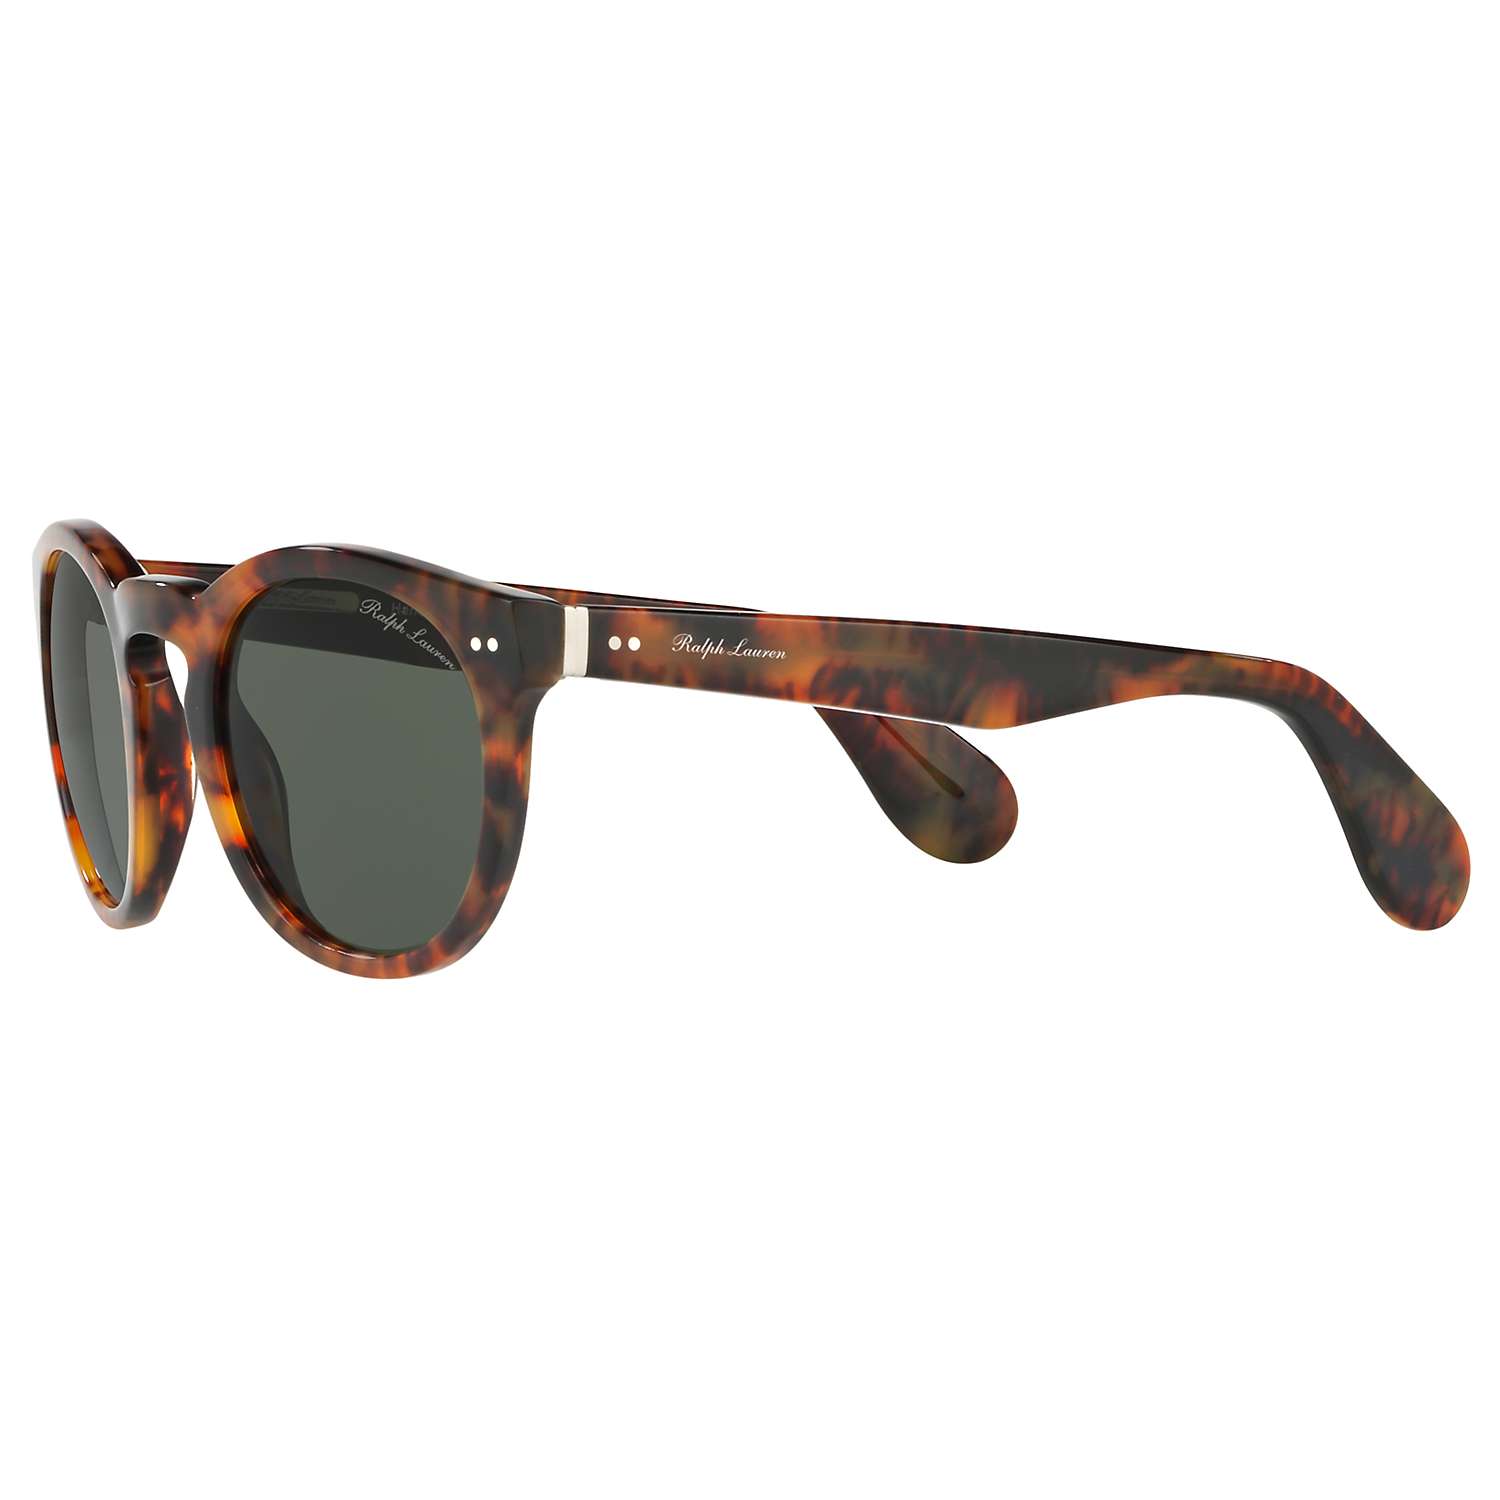 Buy Ralph Lauren RL8146 Oval Sunglasses, Tortoise Online at johnlewis.com